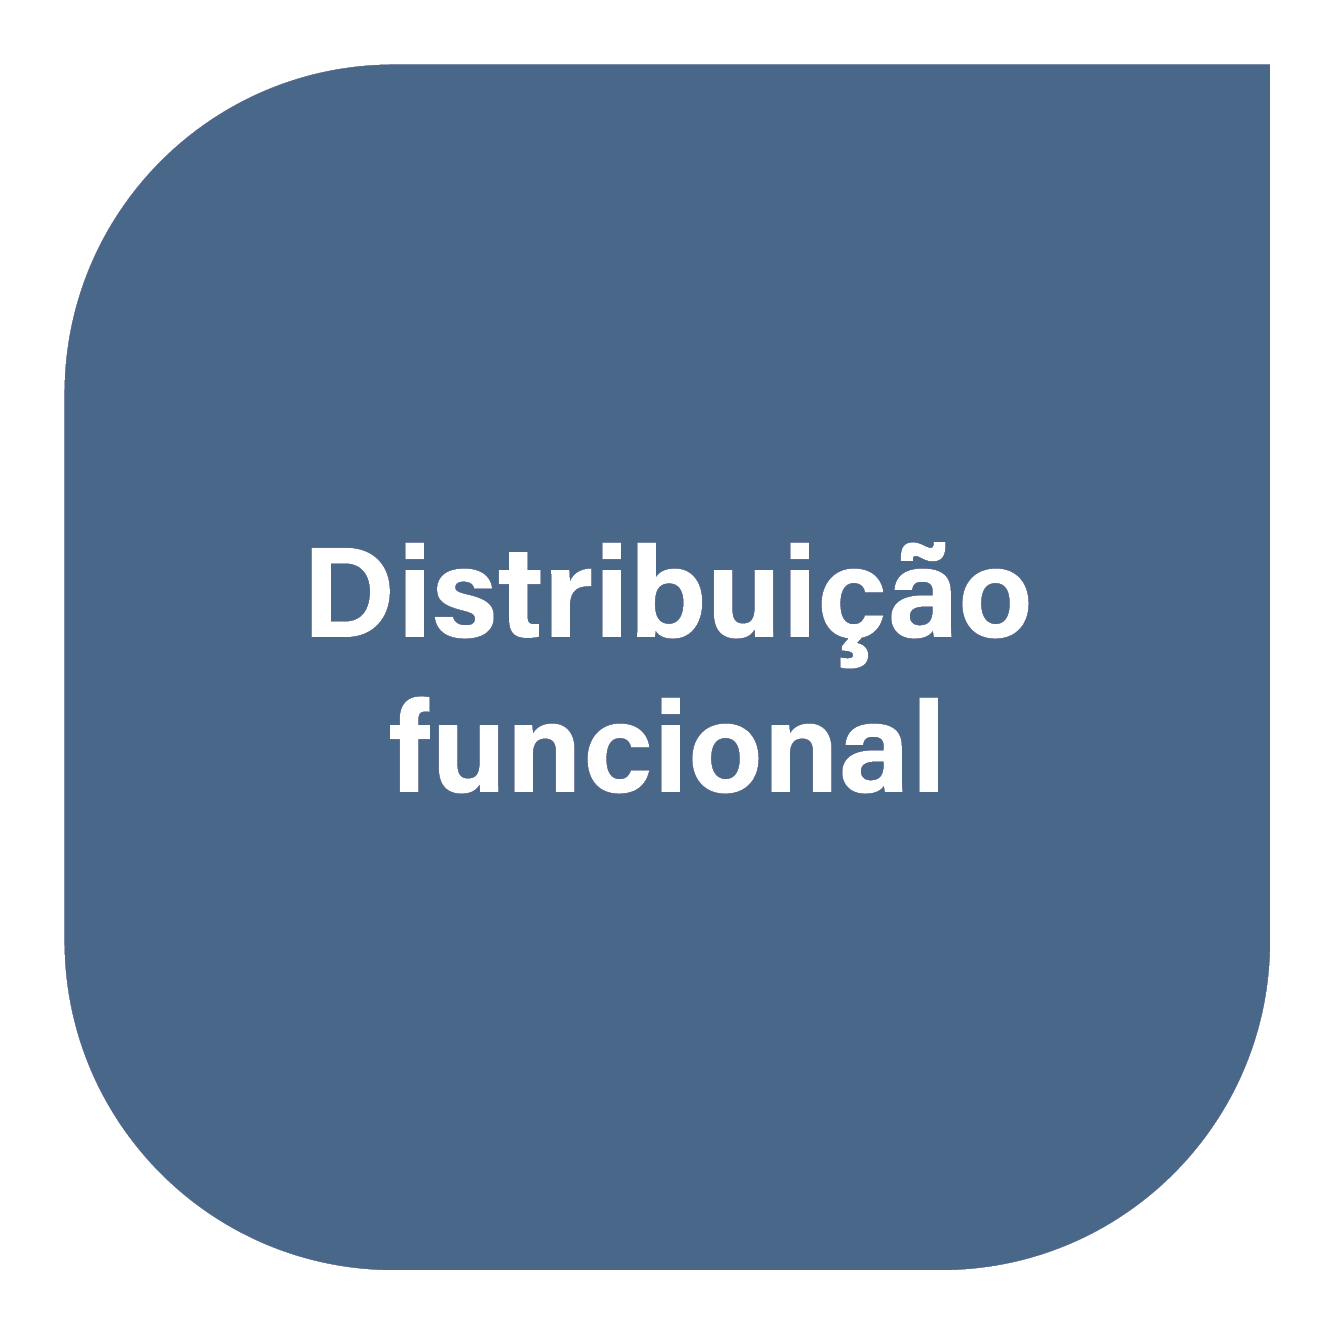 Distribuição funcional